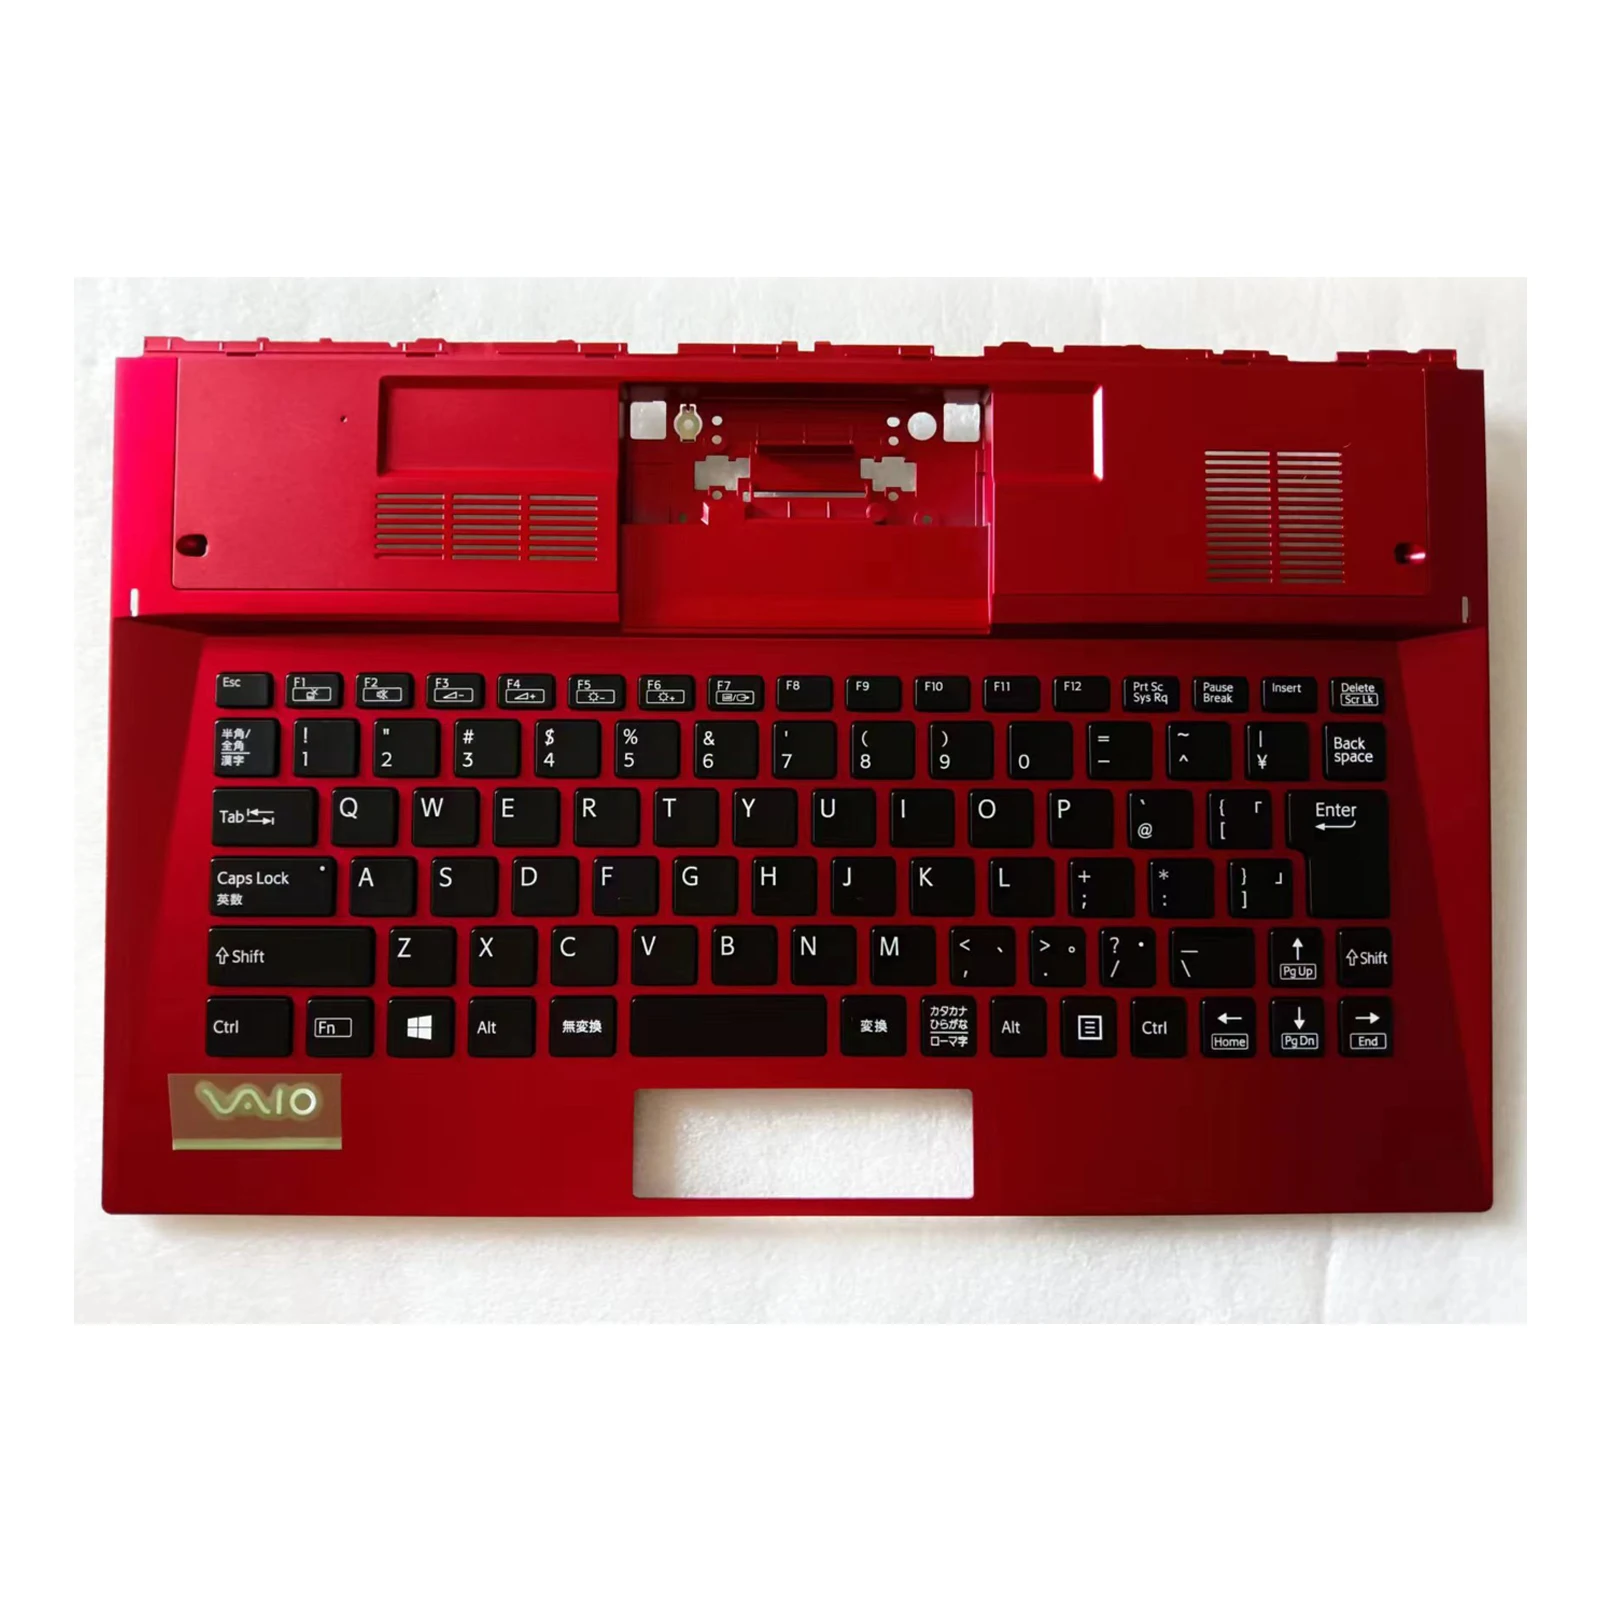 teclado-de-repuesto-para-sony-vpc-svd13-color-rojo-jp-carcasa-c-nuevo